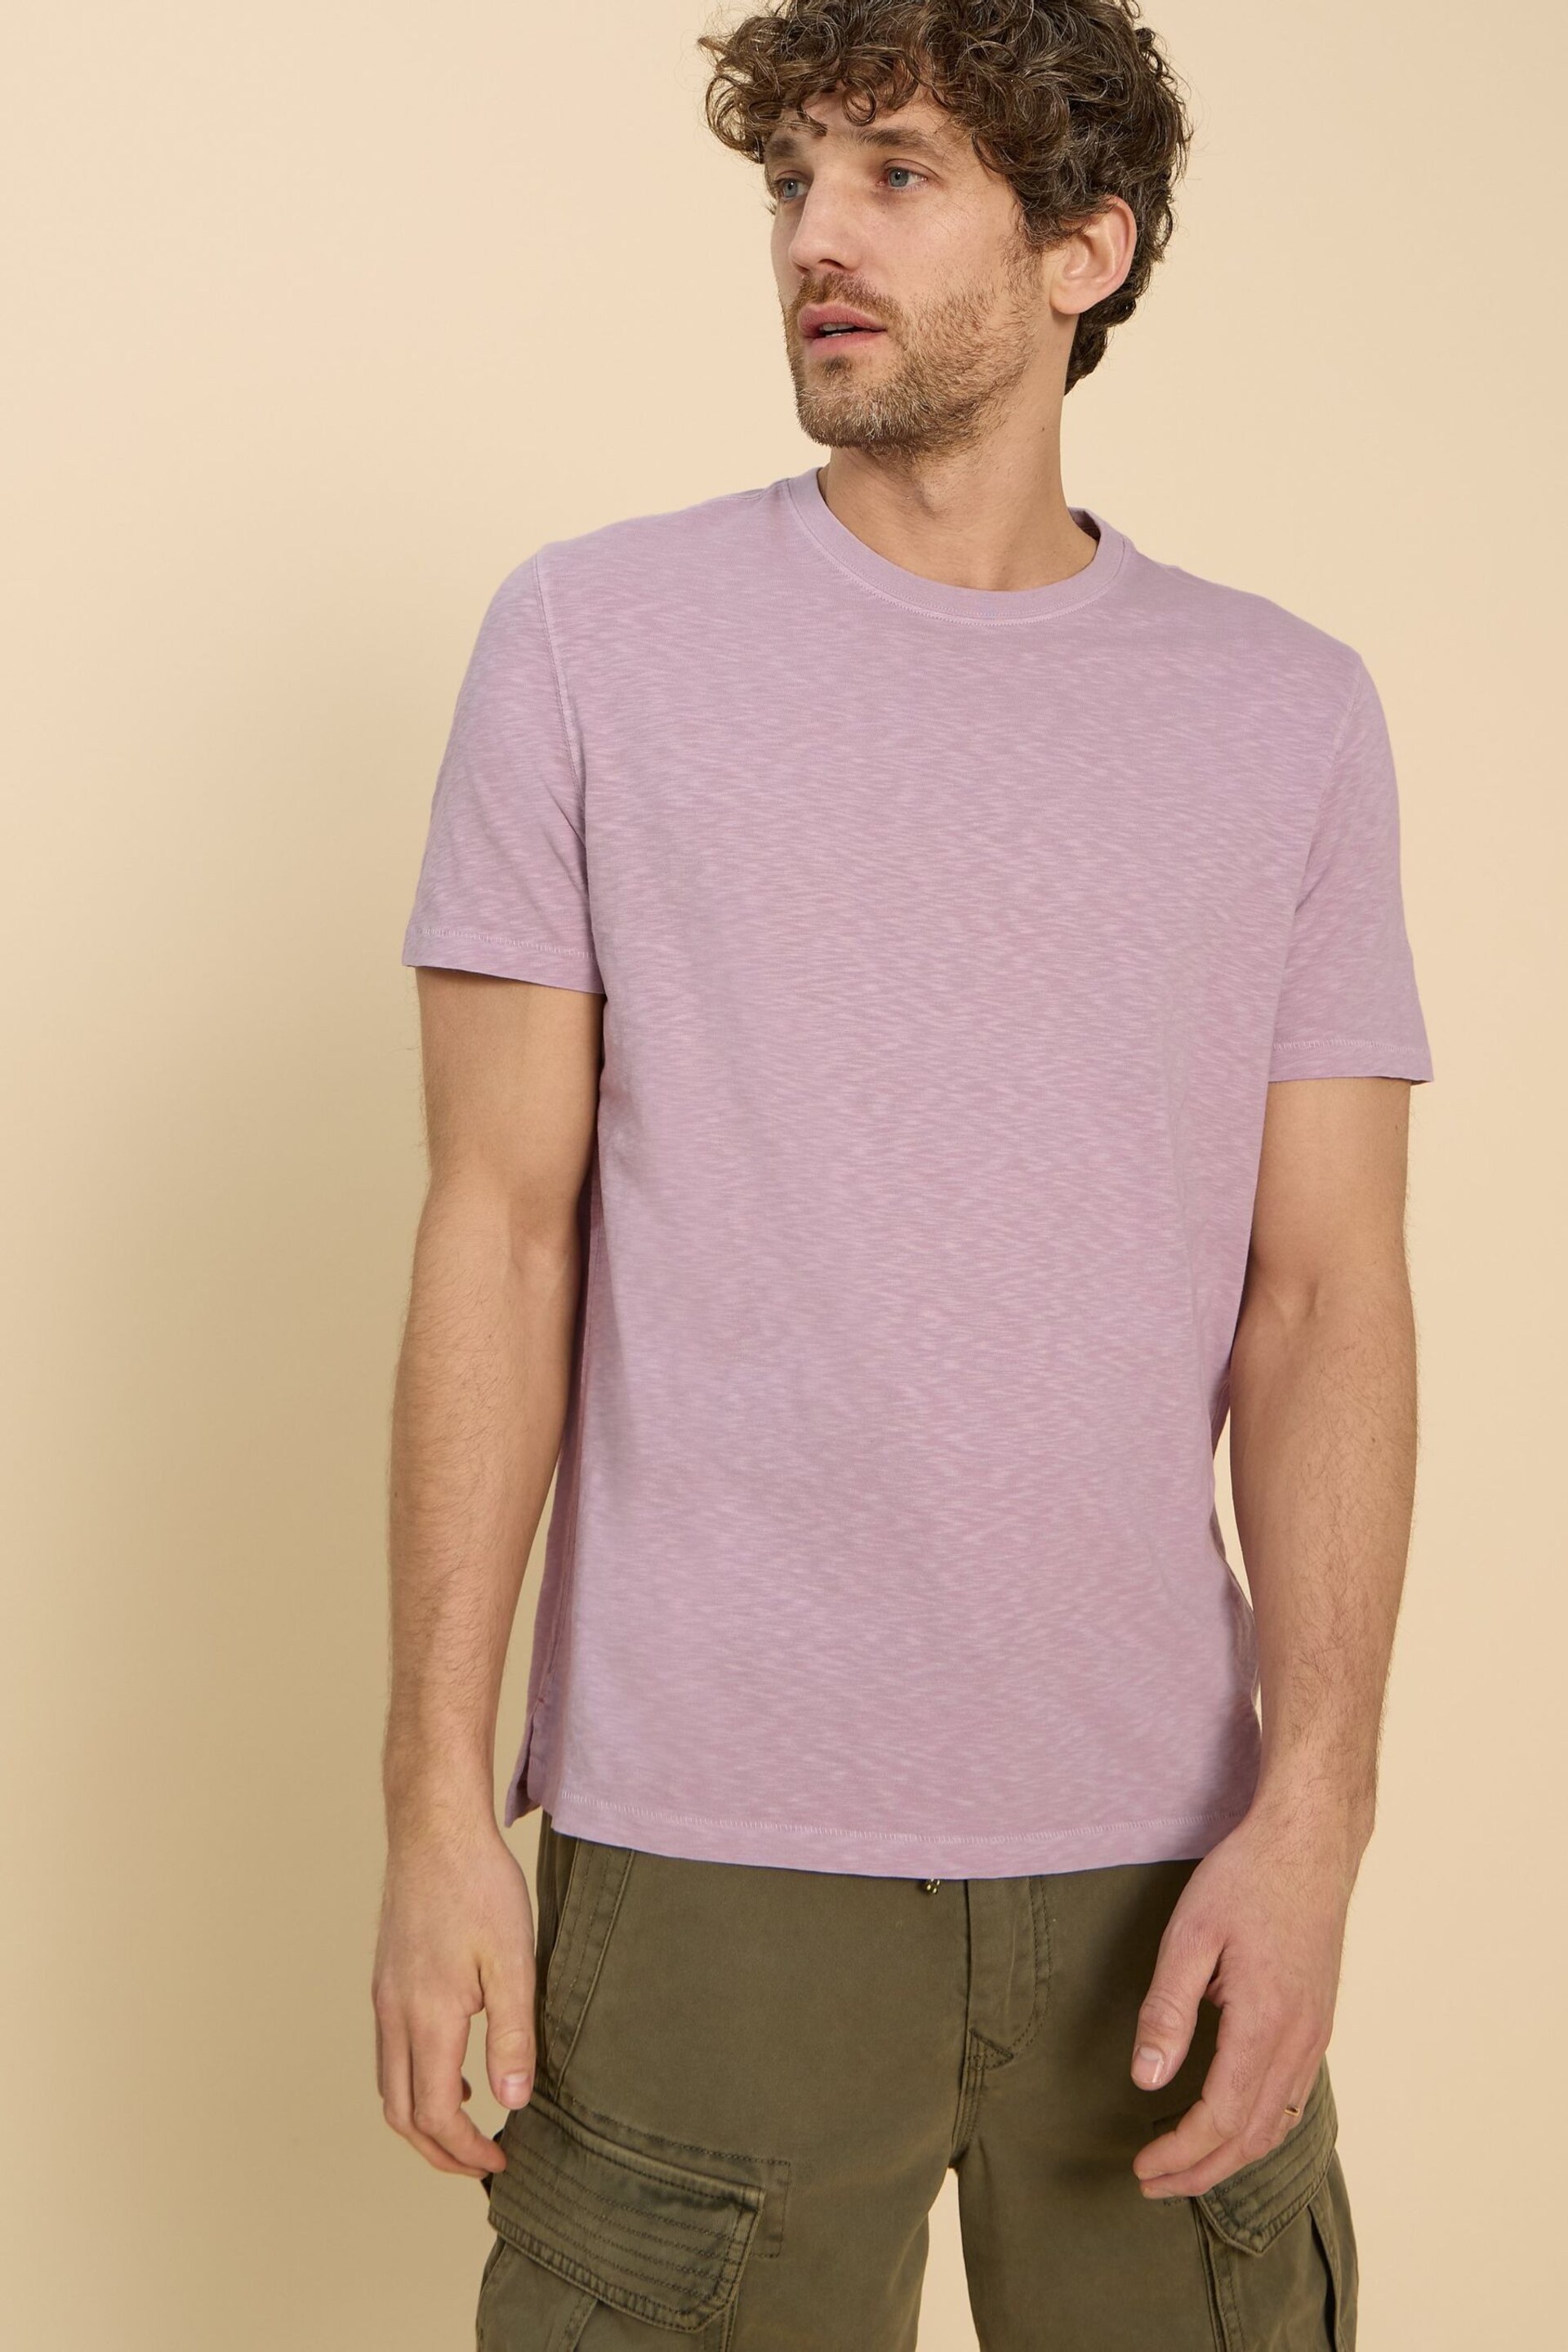 White Stuff Purple Abersoch Short Sleeve T-Shirt - Image 1 of 6